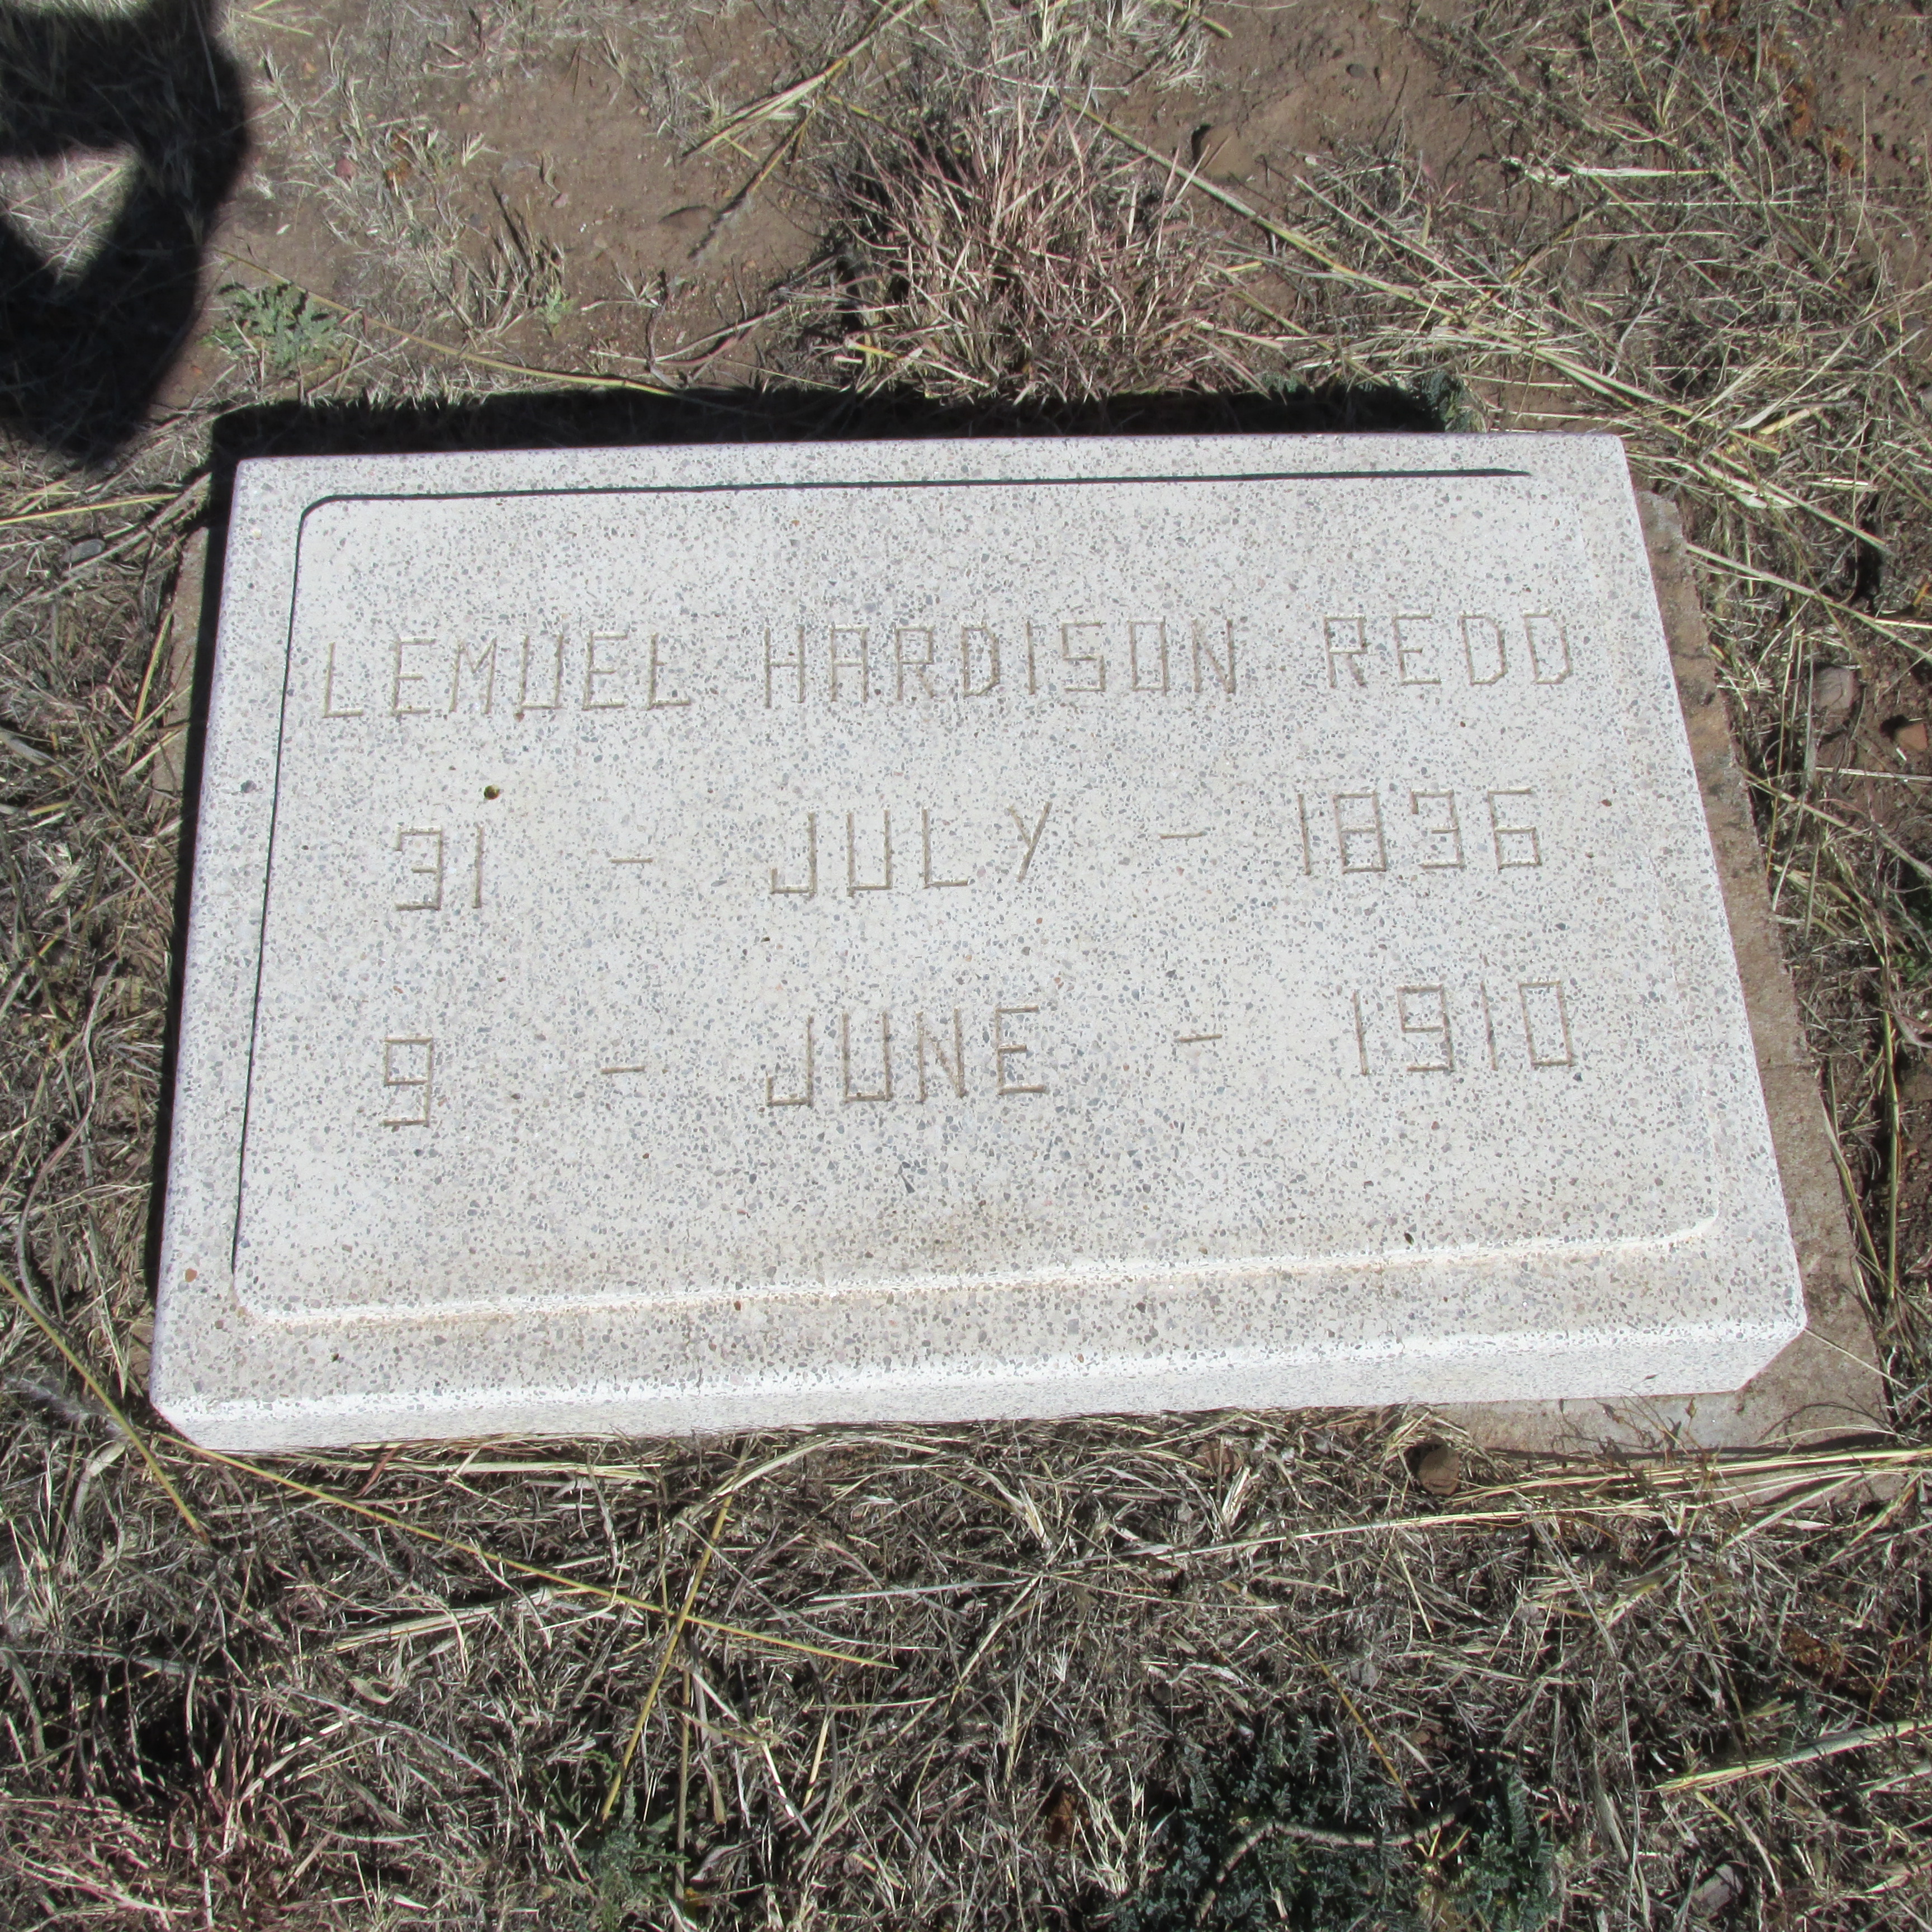 Lemuel H. Redd's grave. 